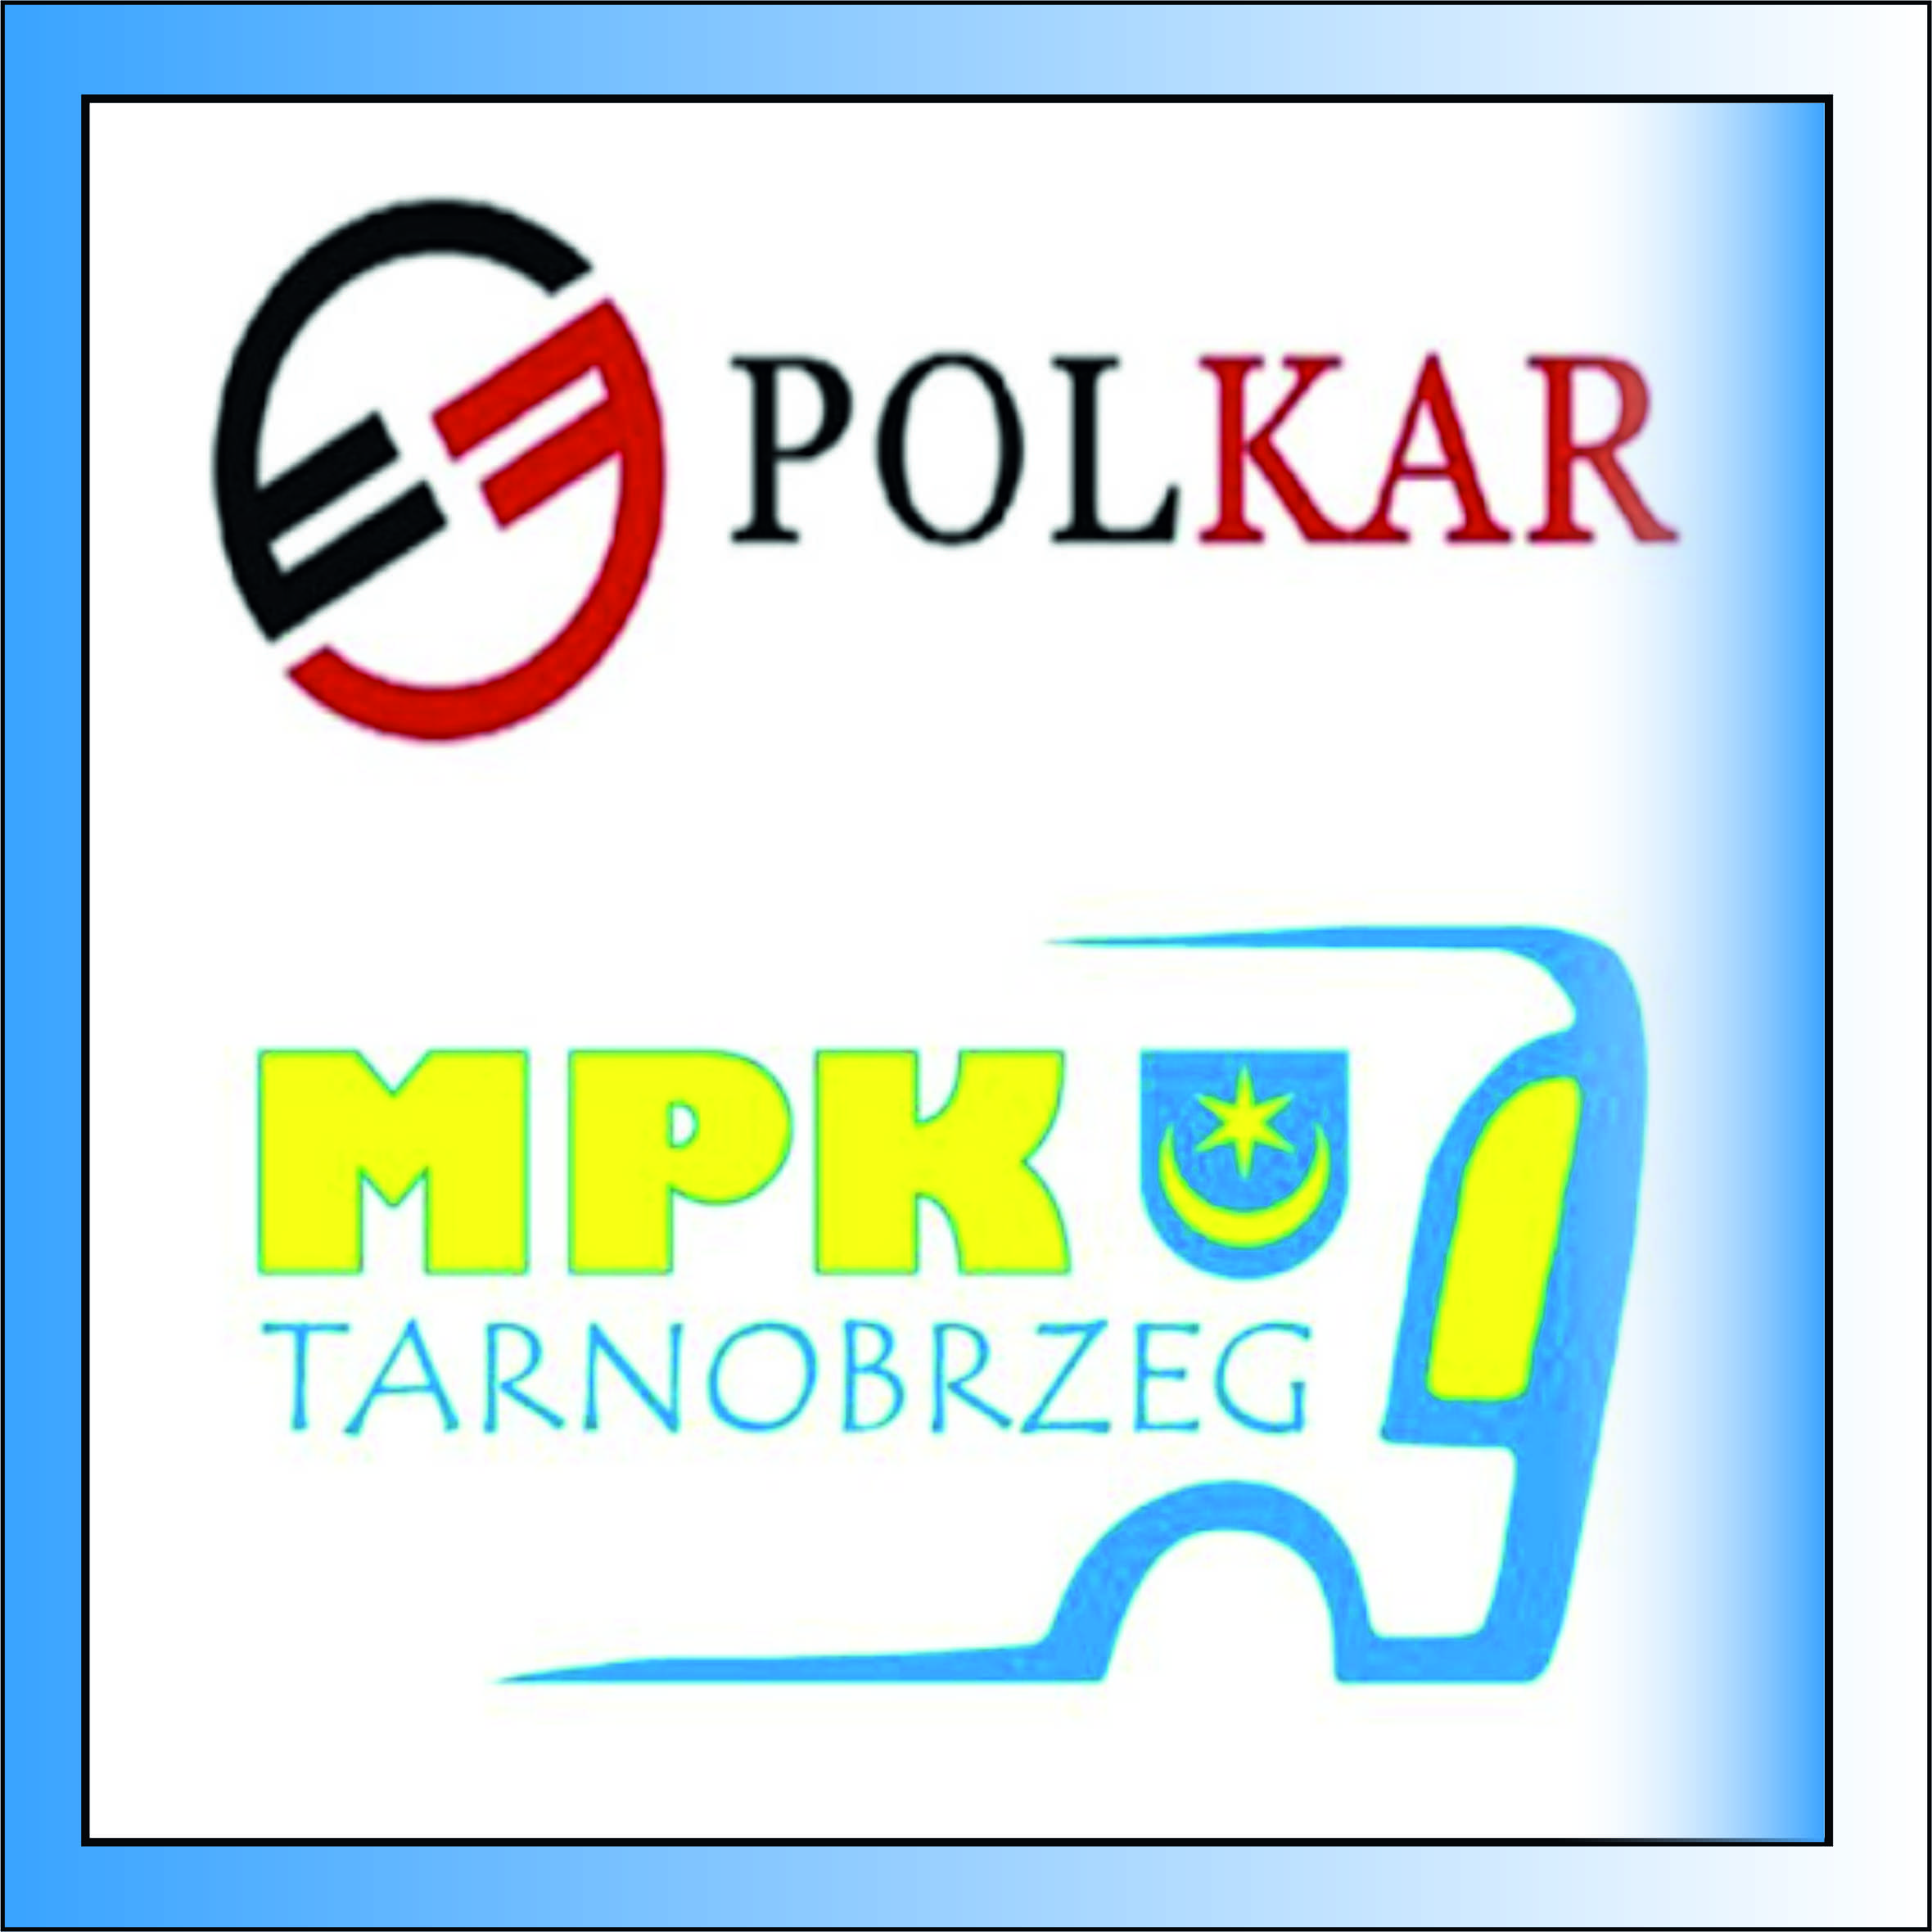 PHU POLKAR oraz MPK Tarnobrzeg informuje  o kursowaniu autobusów miejskich w dniach 14-18.04.2022 r.